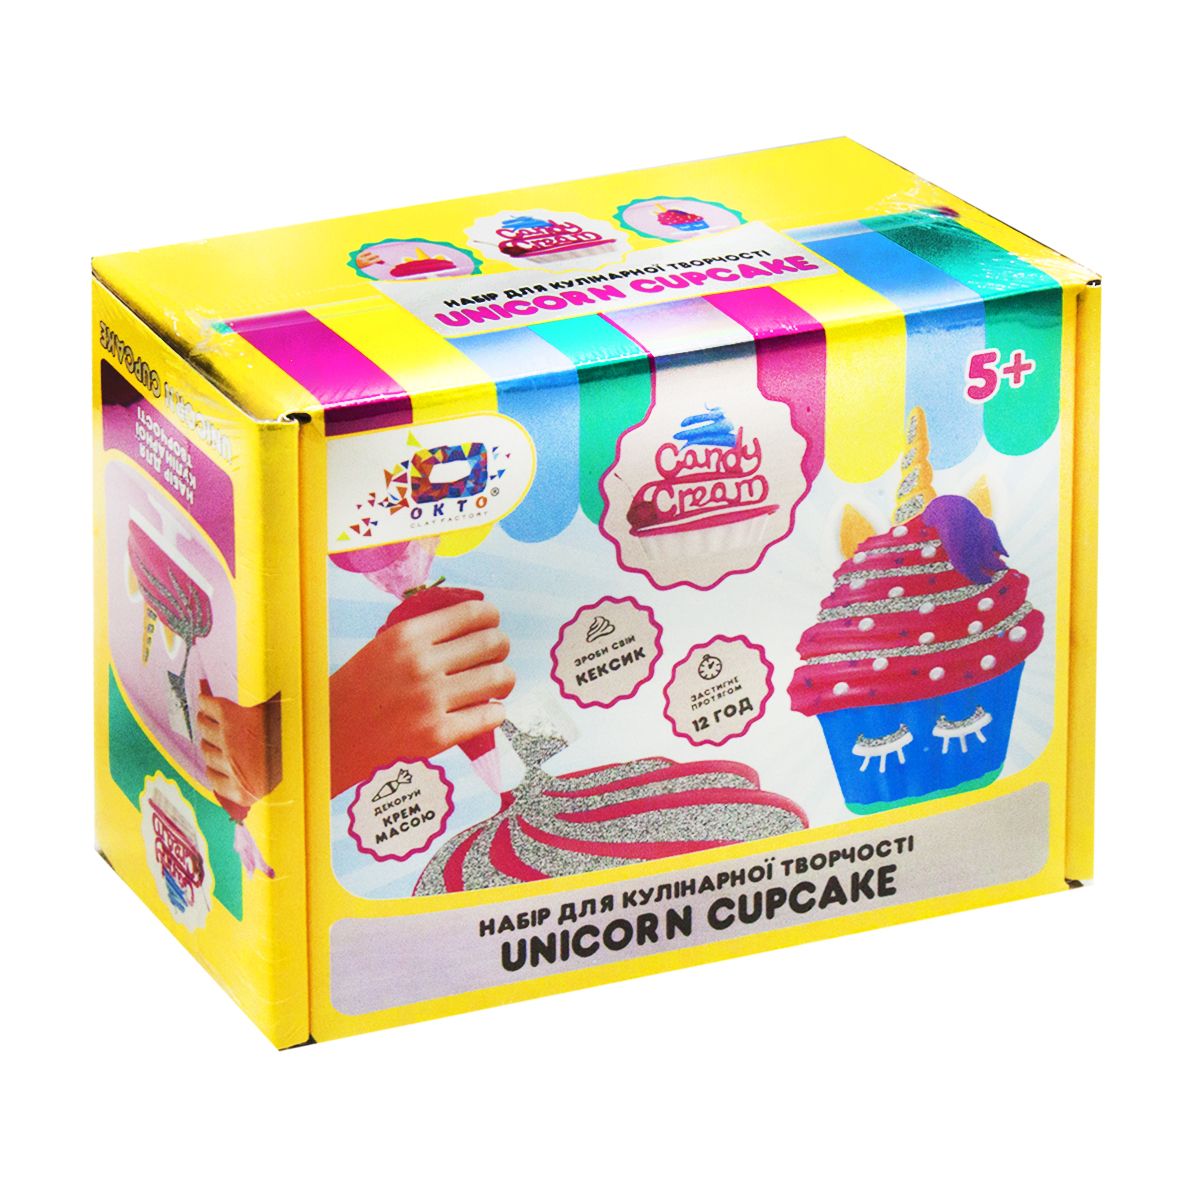 Набір для творчості "Candy cream.  Unicorn Cupcake"